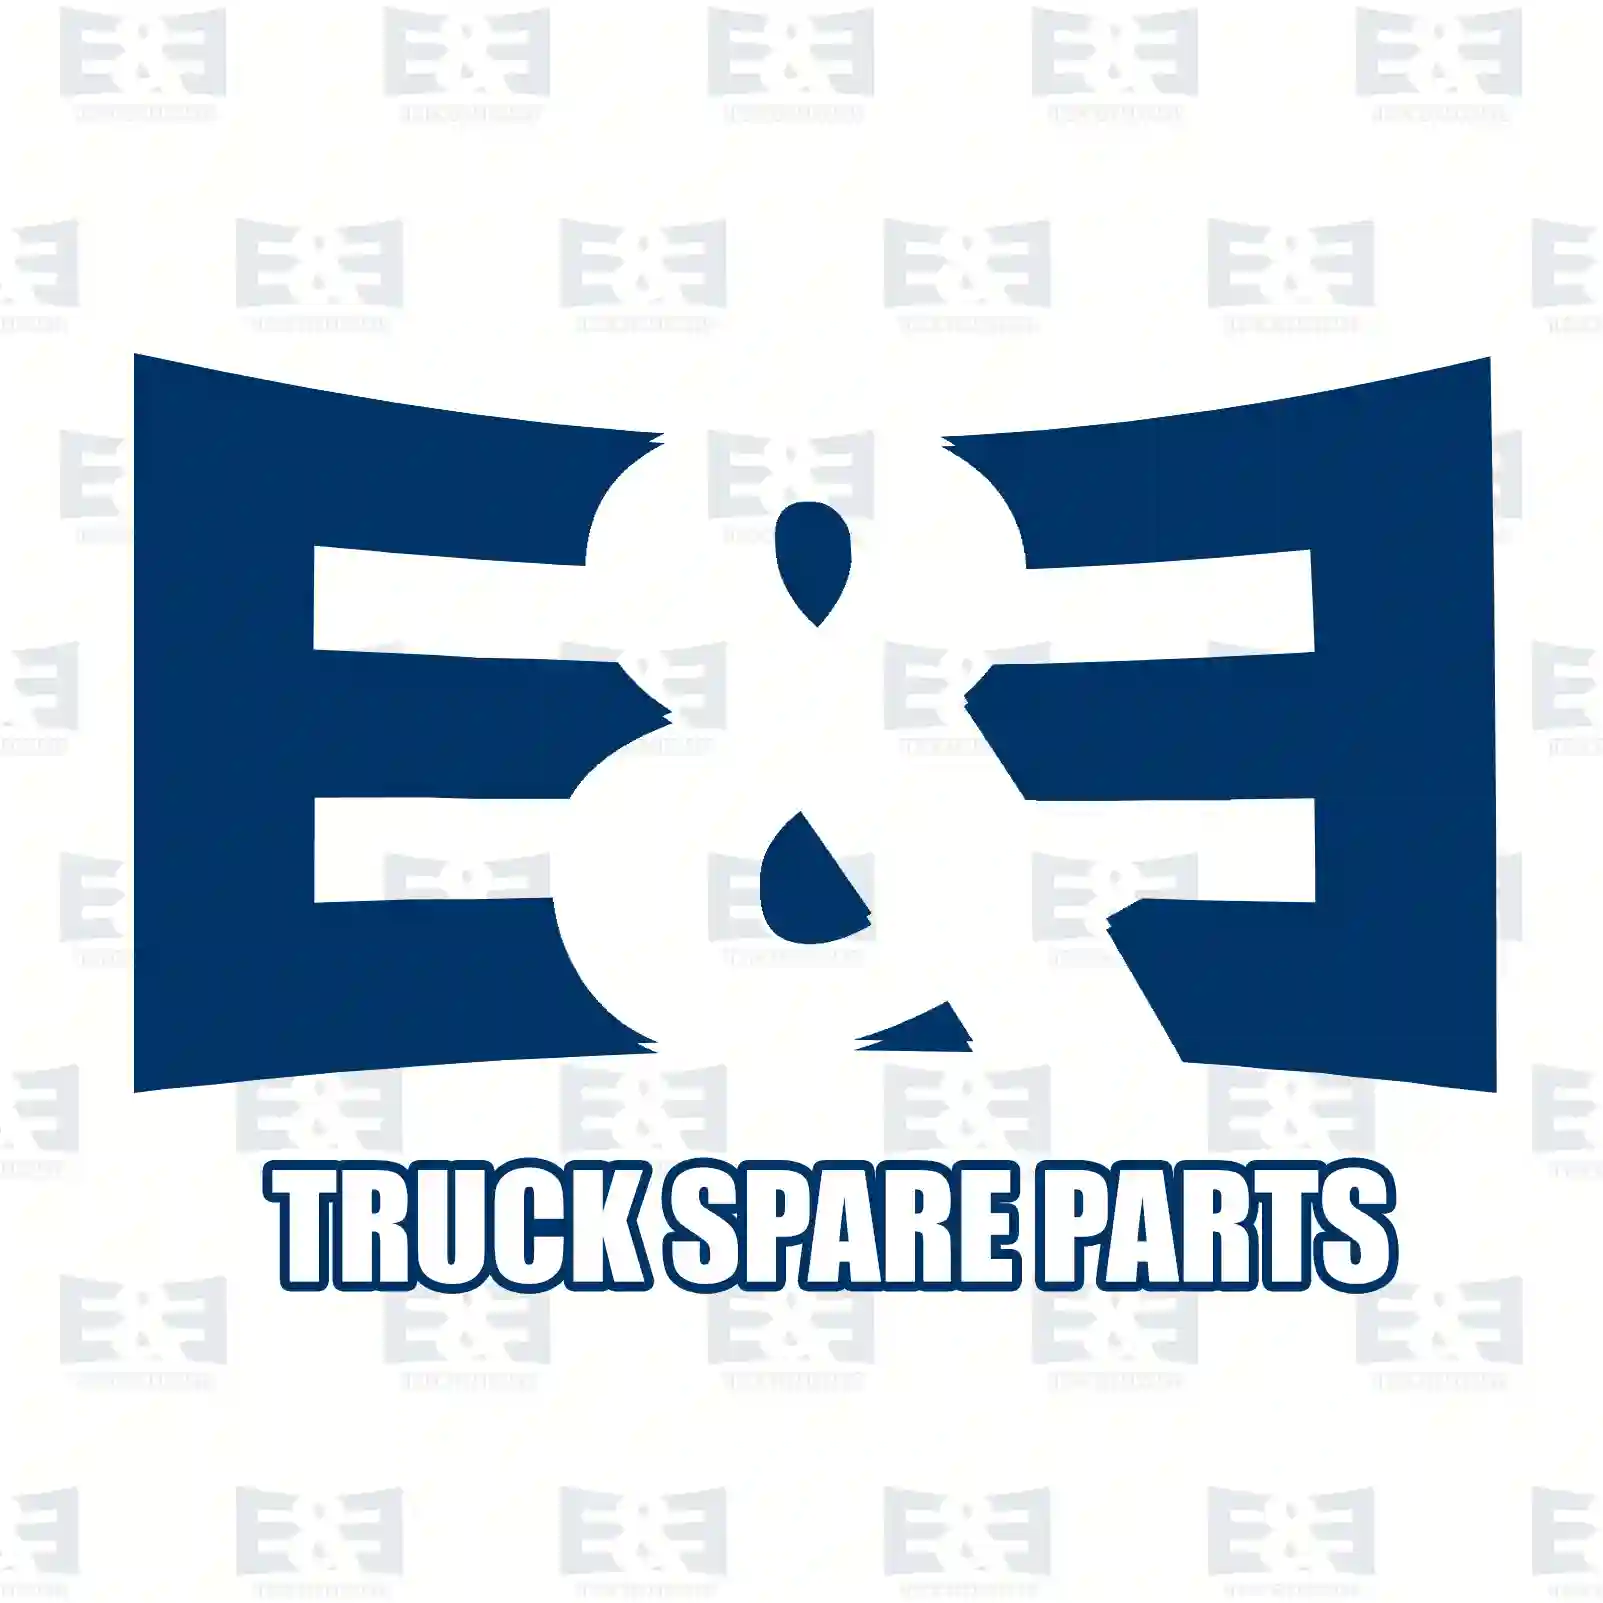 Ball joint, 2E2277654, 5010239842 ||  2E2277654 E&E Truck Spare Parts | Truck Spare Parts, Auotomotive Spare Parts Ball joint, 2E2277654, 5010239842 ||  2E2277654 E&E Truck Spare Parts | Truck Spare Parts, Auotomotive Spare Parts